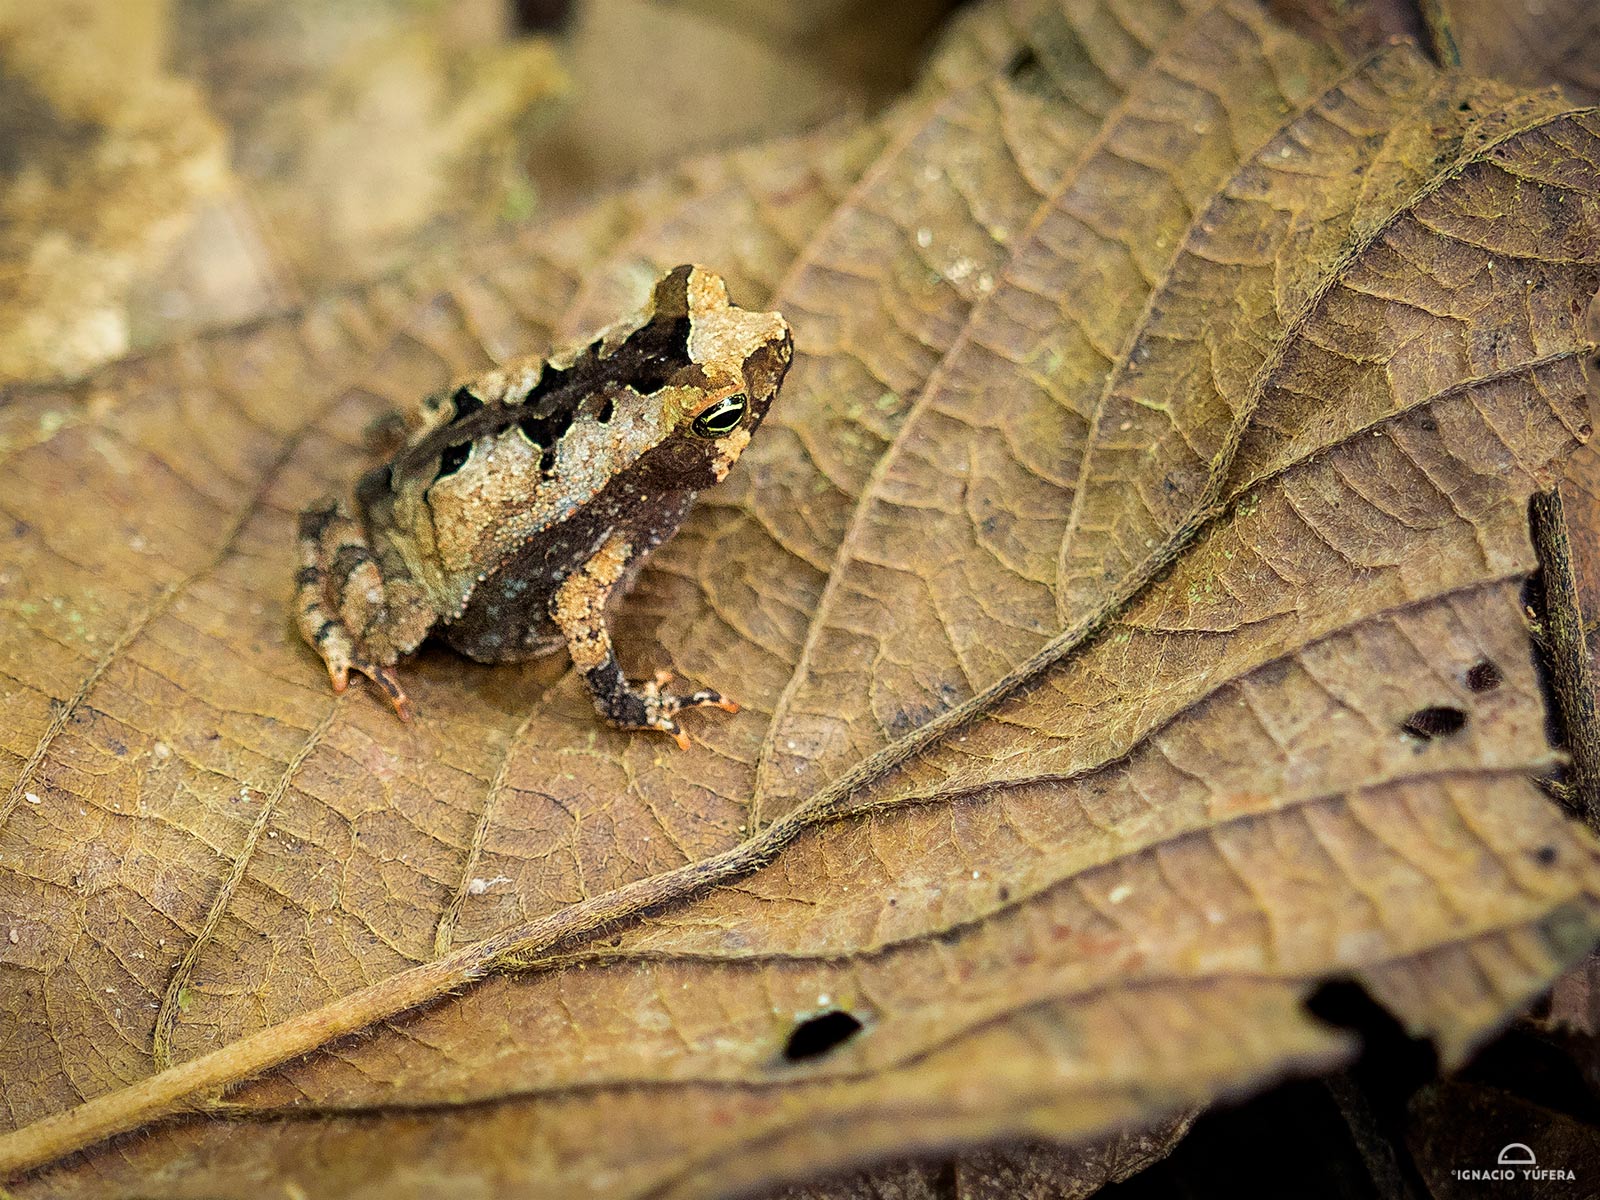 Leaf-litter toad (Rhinella alata), Gamboa, Panama, April